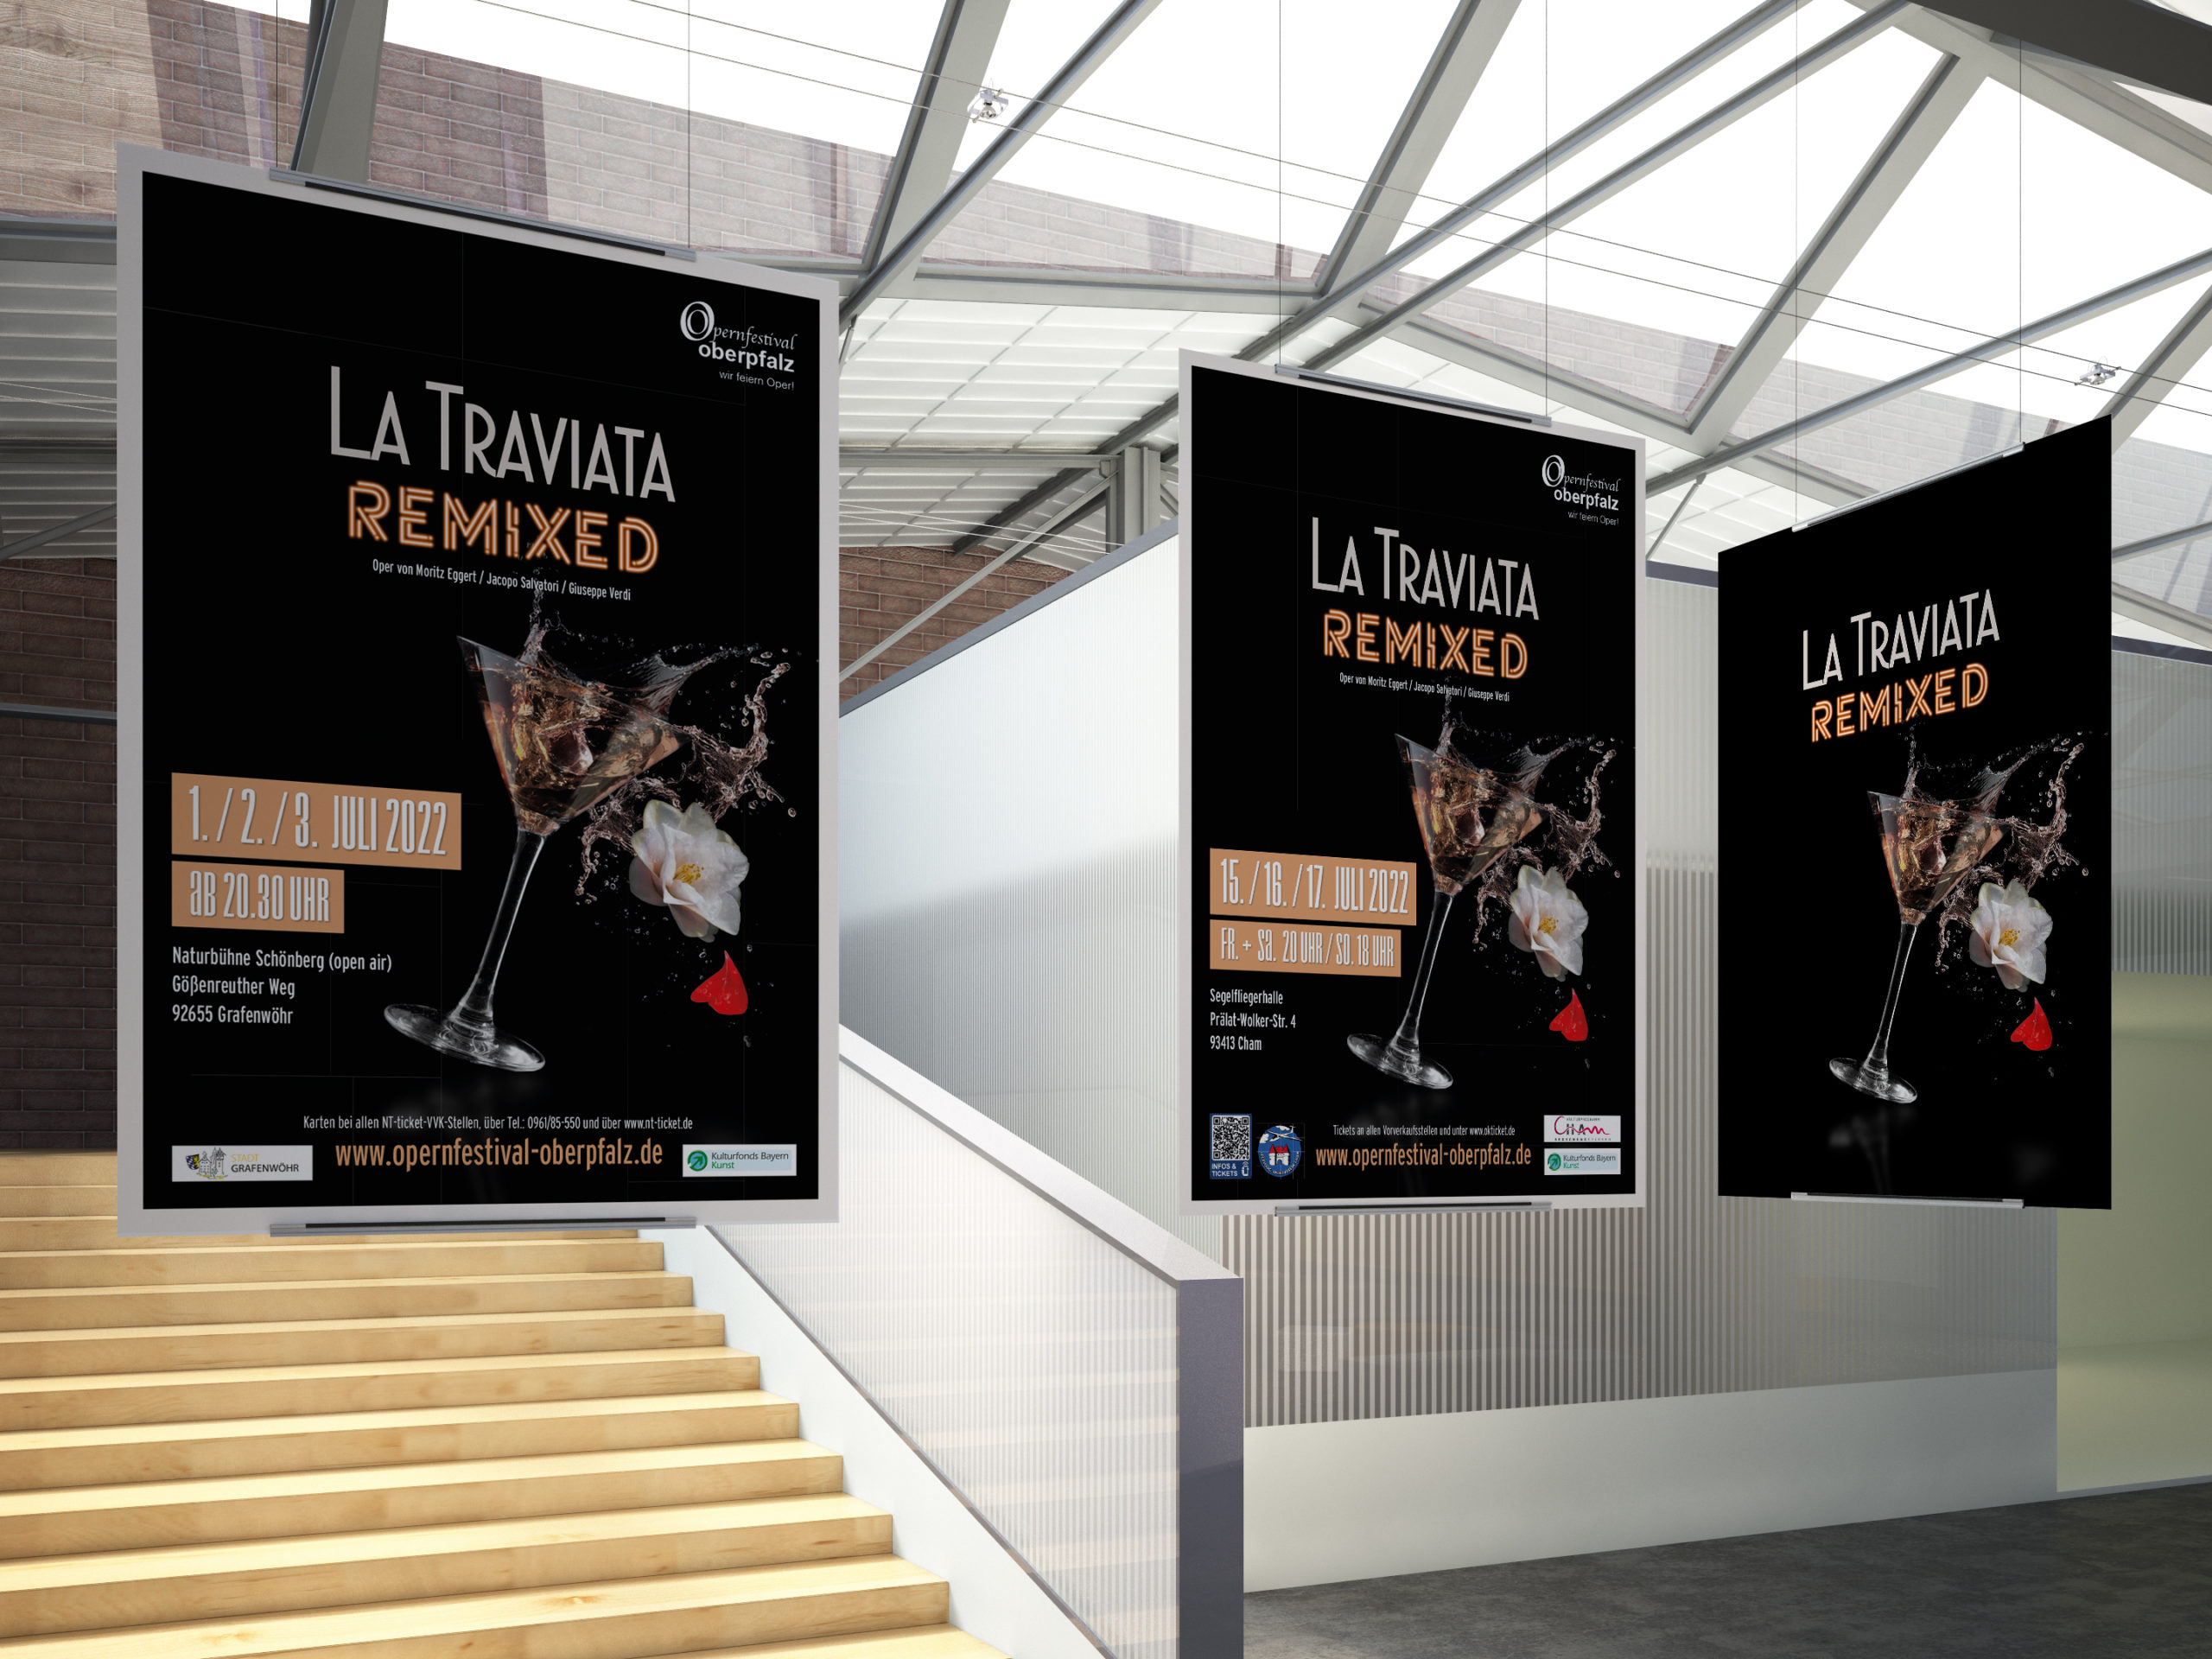 La Traviata, Remixed, Oper, Programm, Opernfestival, Oberpfalz